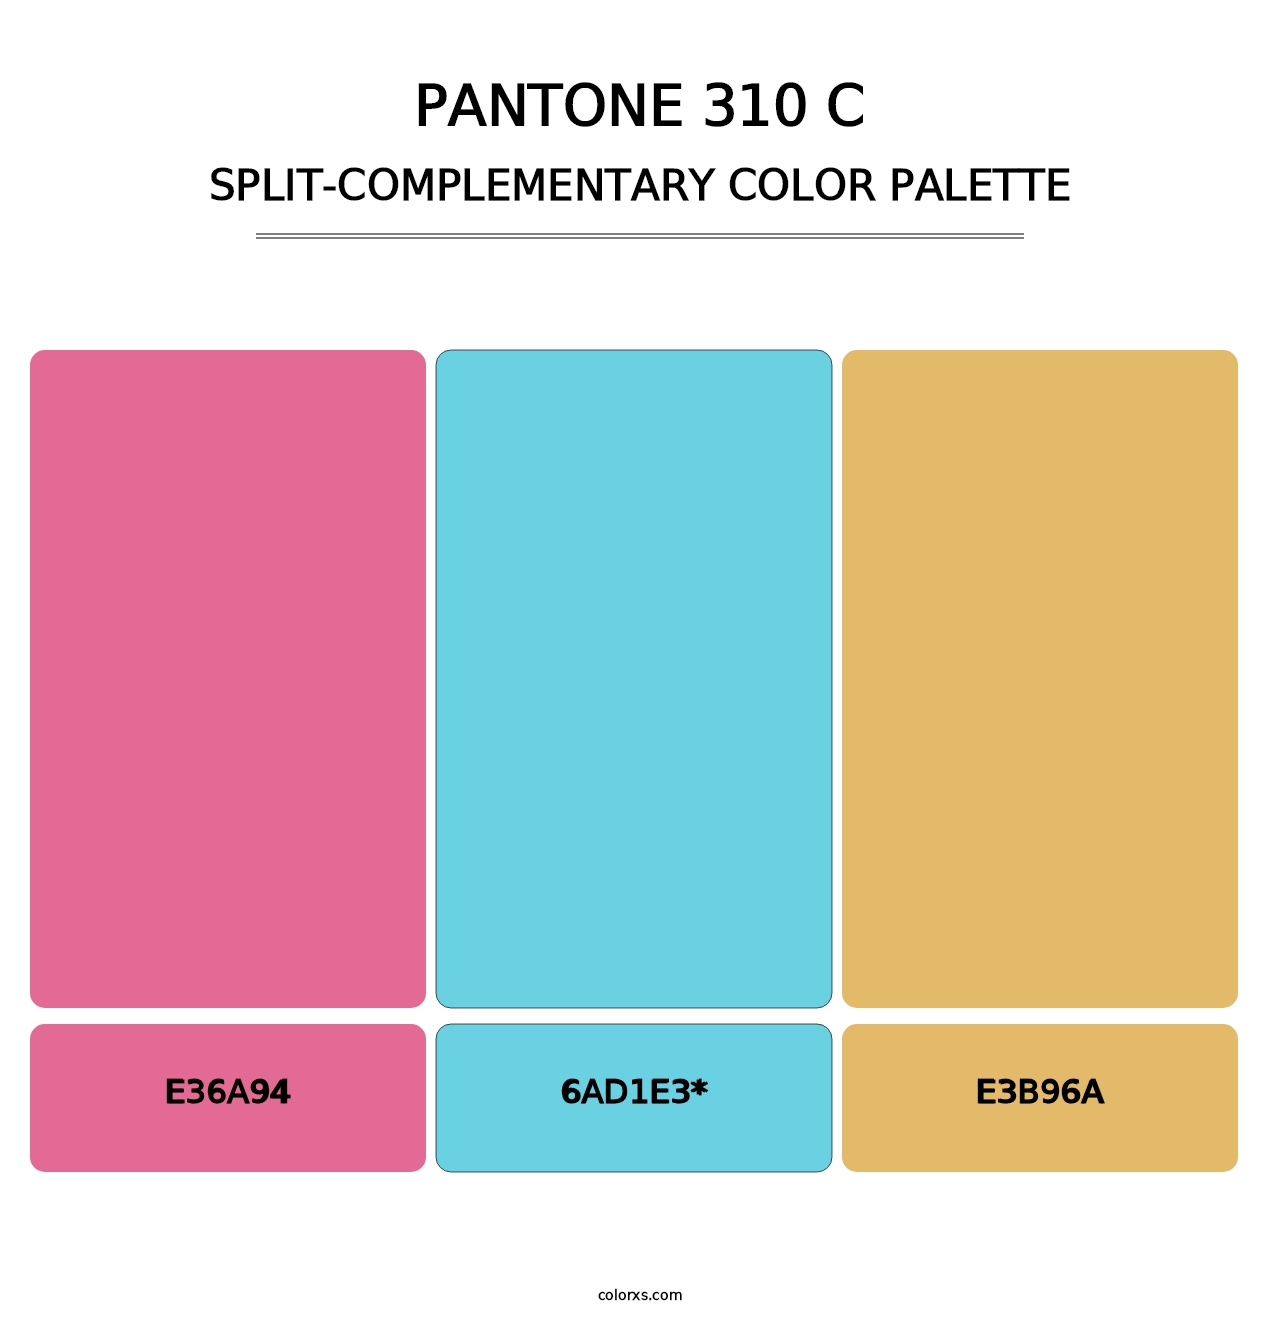 PANTONE 310 C - Split-Complementary Color Palette